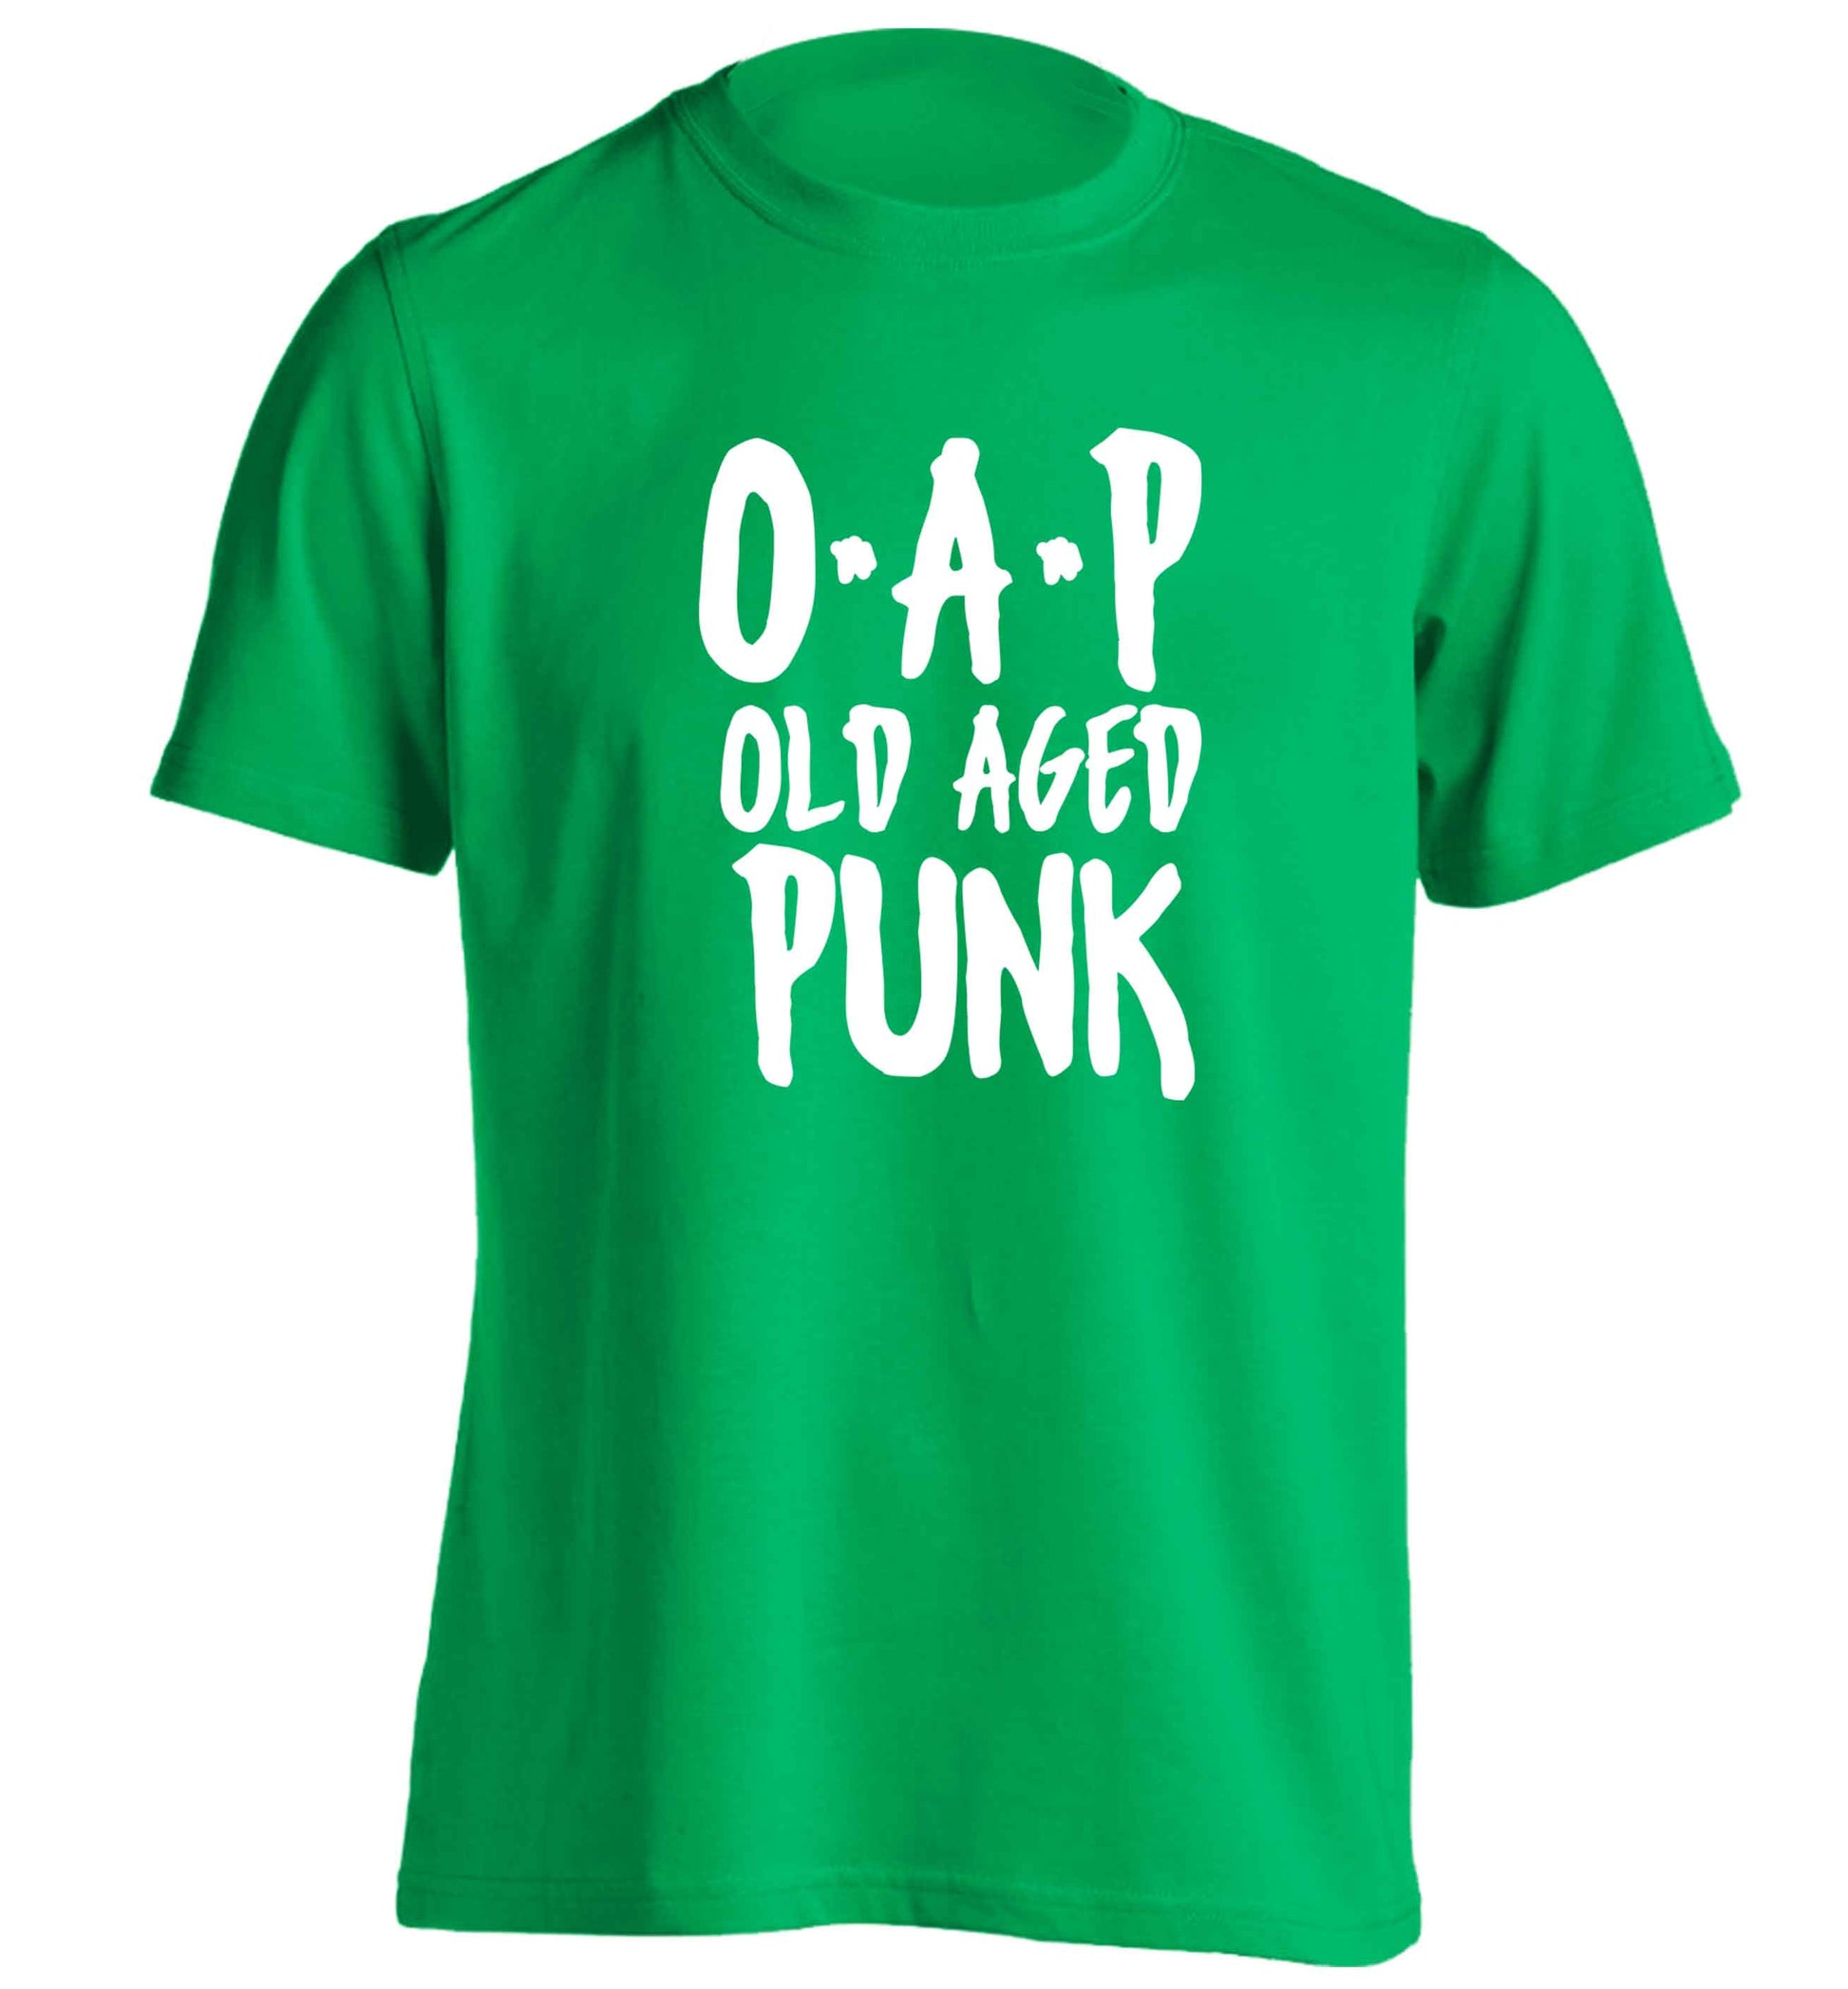 O.A.P Old Age Punk adults unisex green Tshirt 2XL